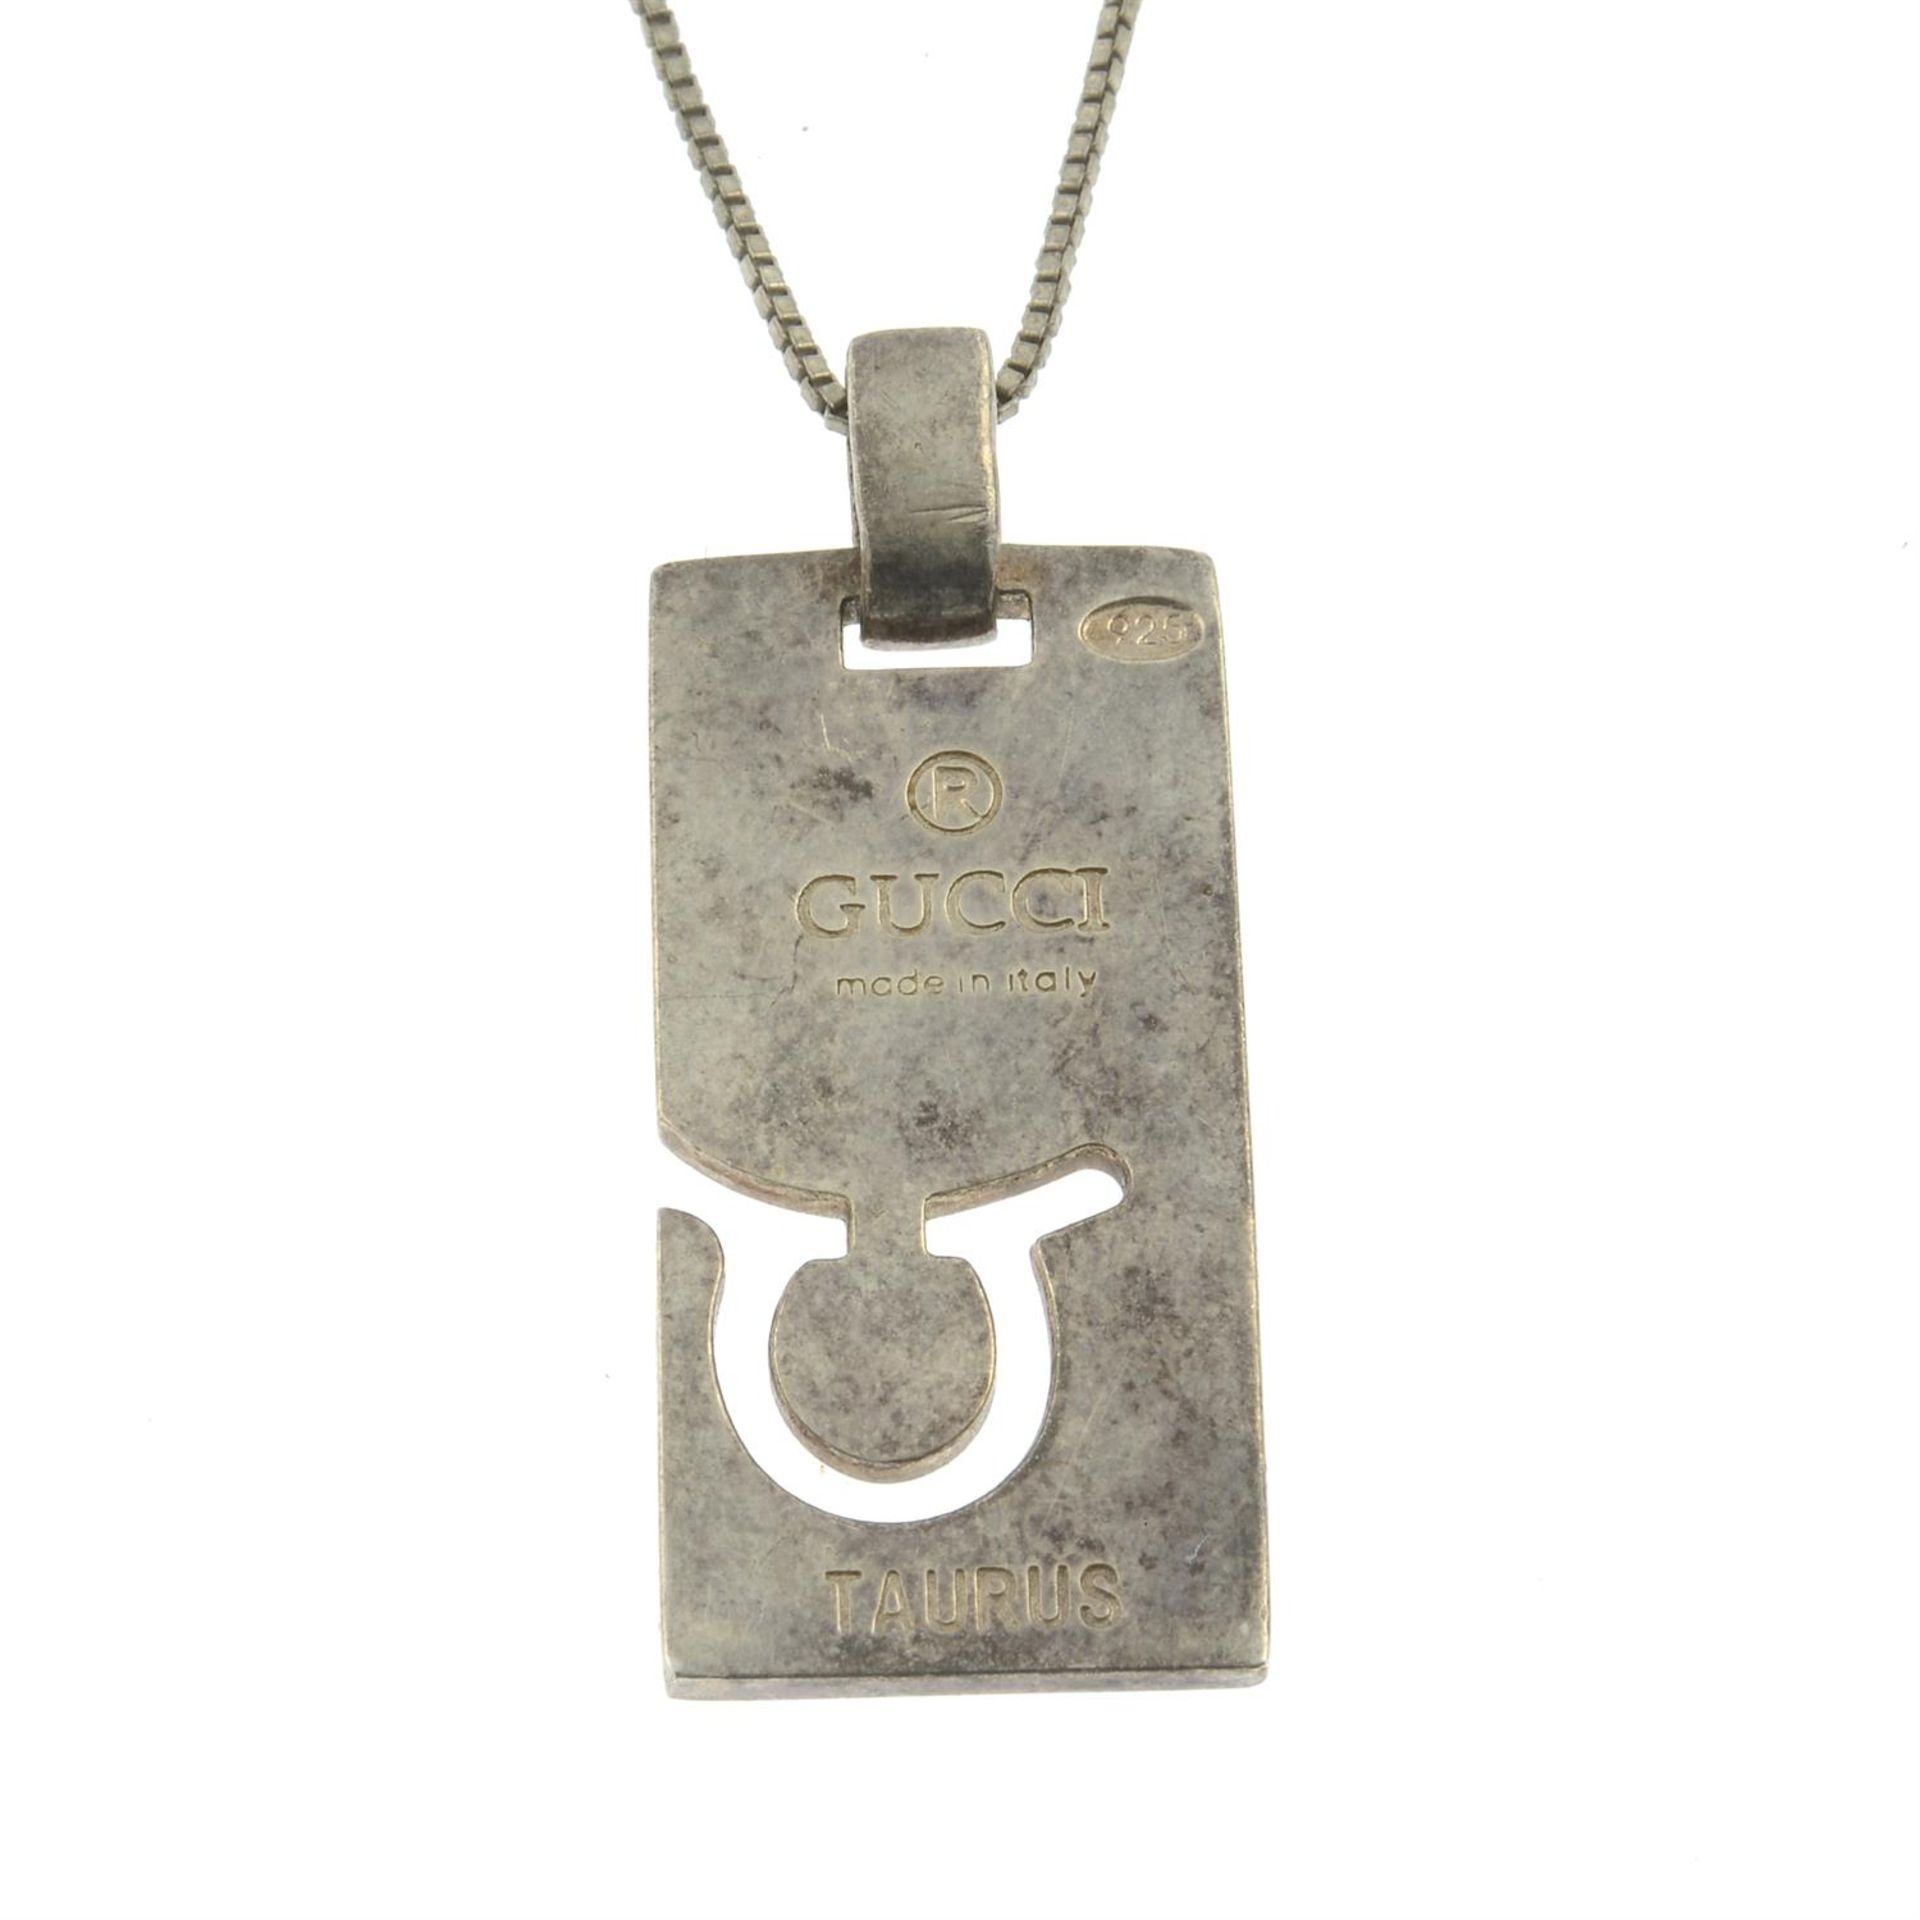 GUCCI - a Taurus pendant, with non-designer chain.